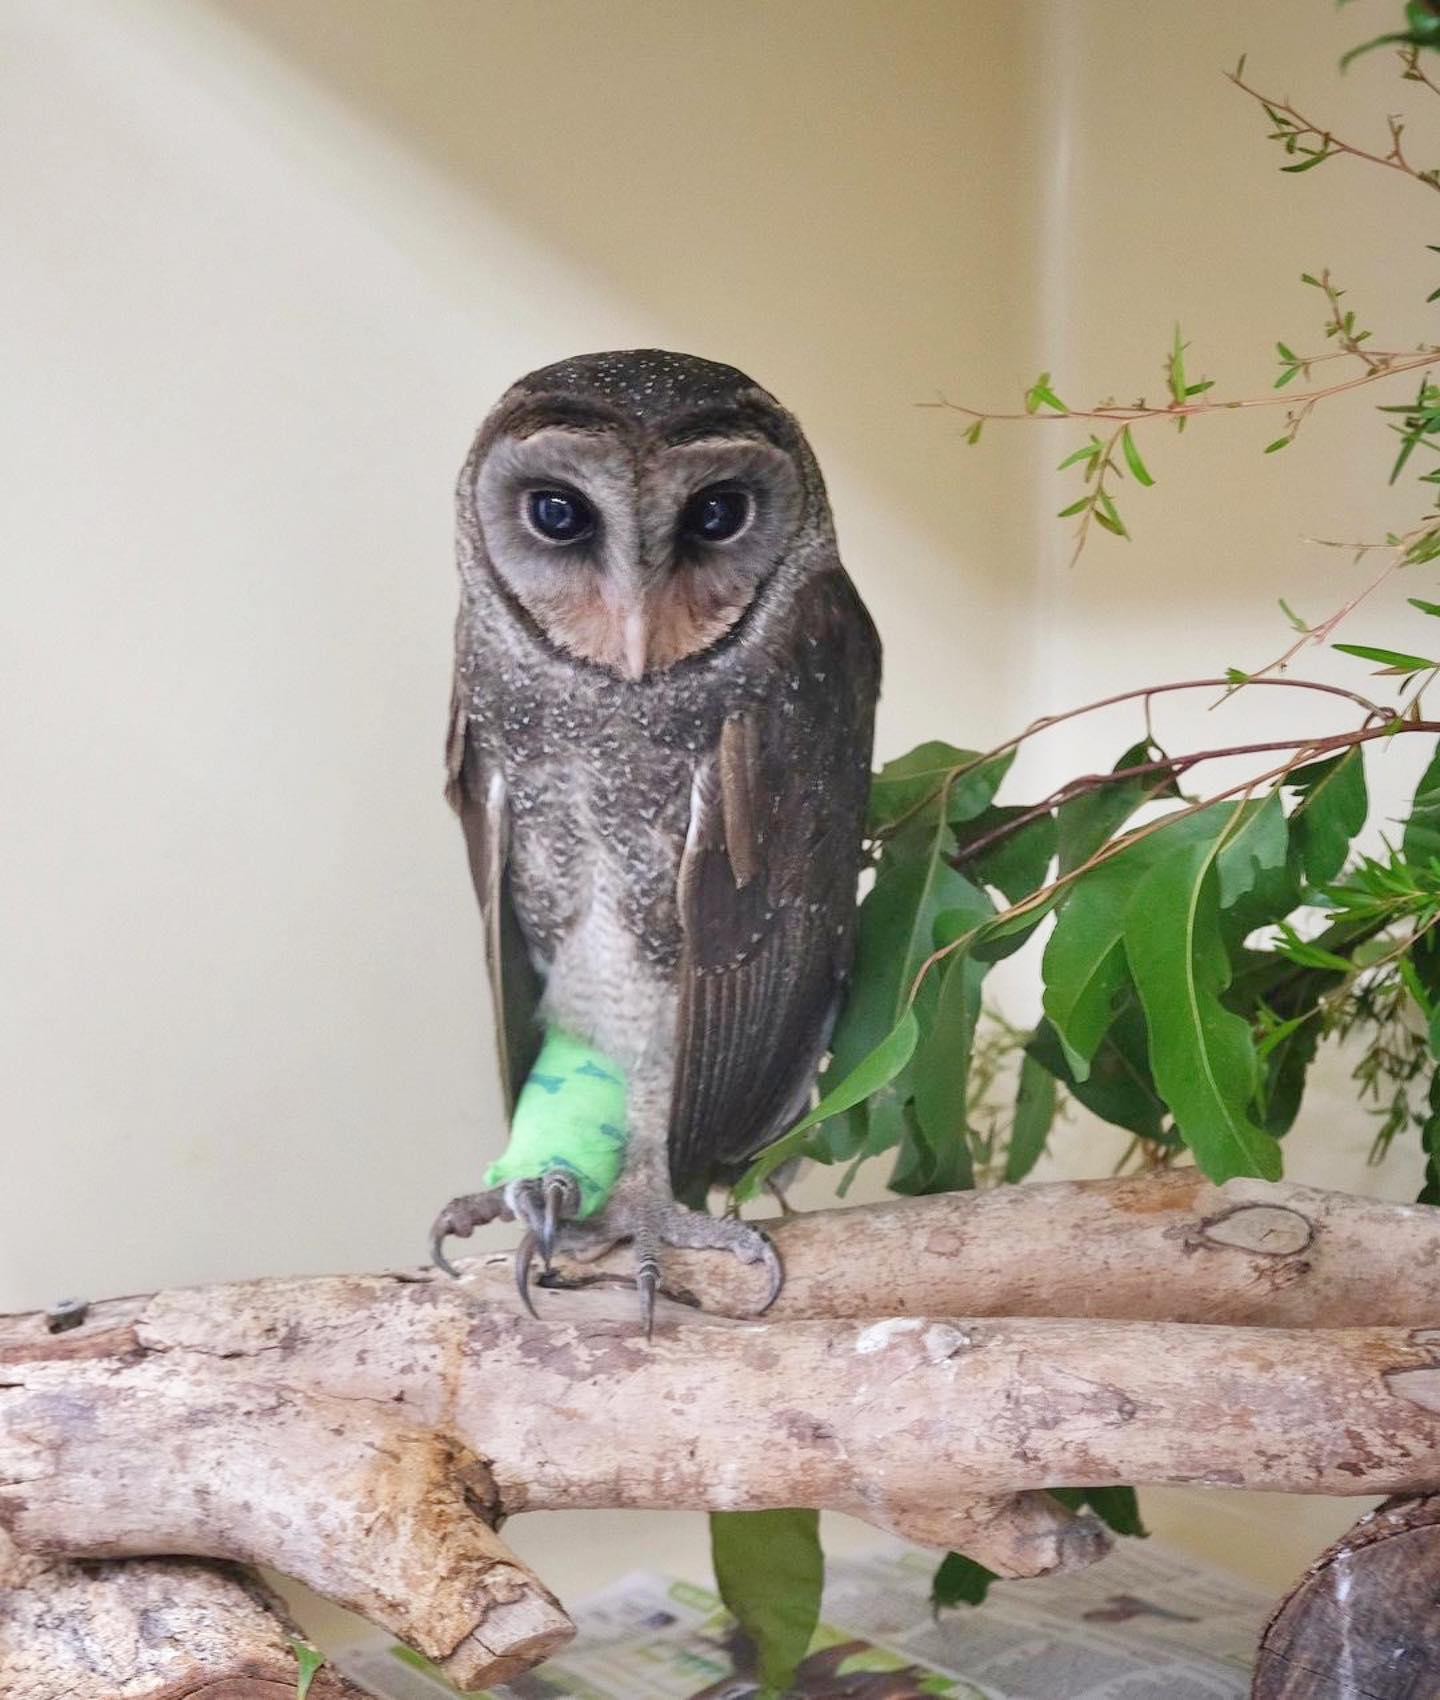 Bindi Irwin shares story of owl